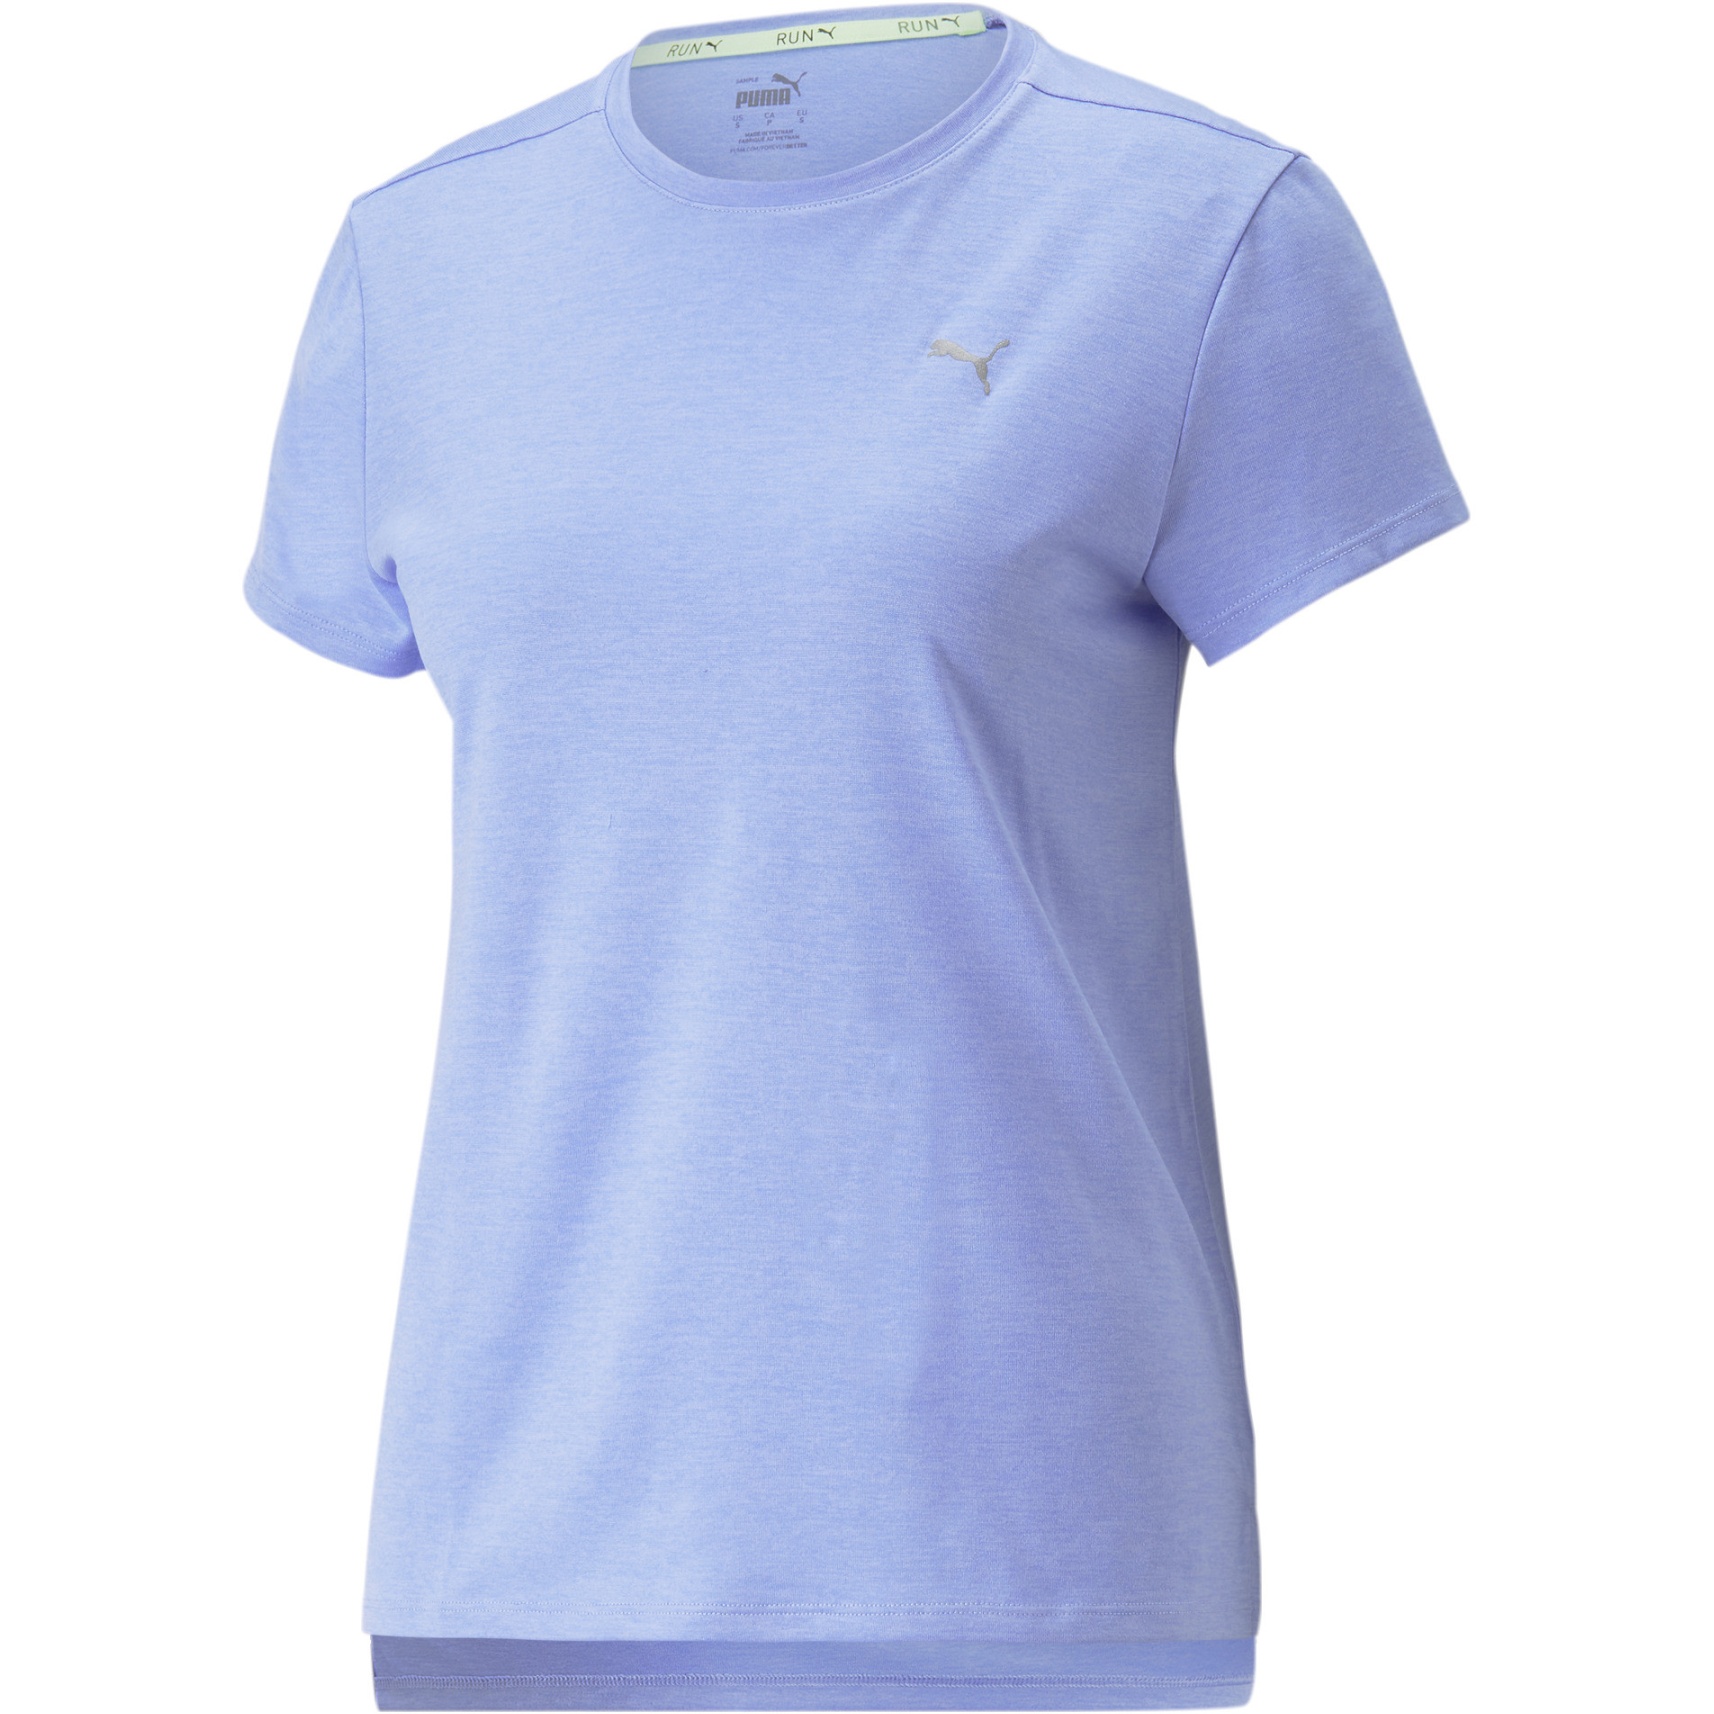 Produktbild von Puma Run Favorite Heather T-Shirt Damen - Elektro Purple Heather